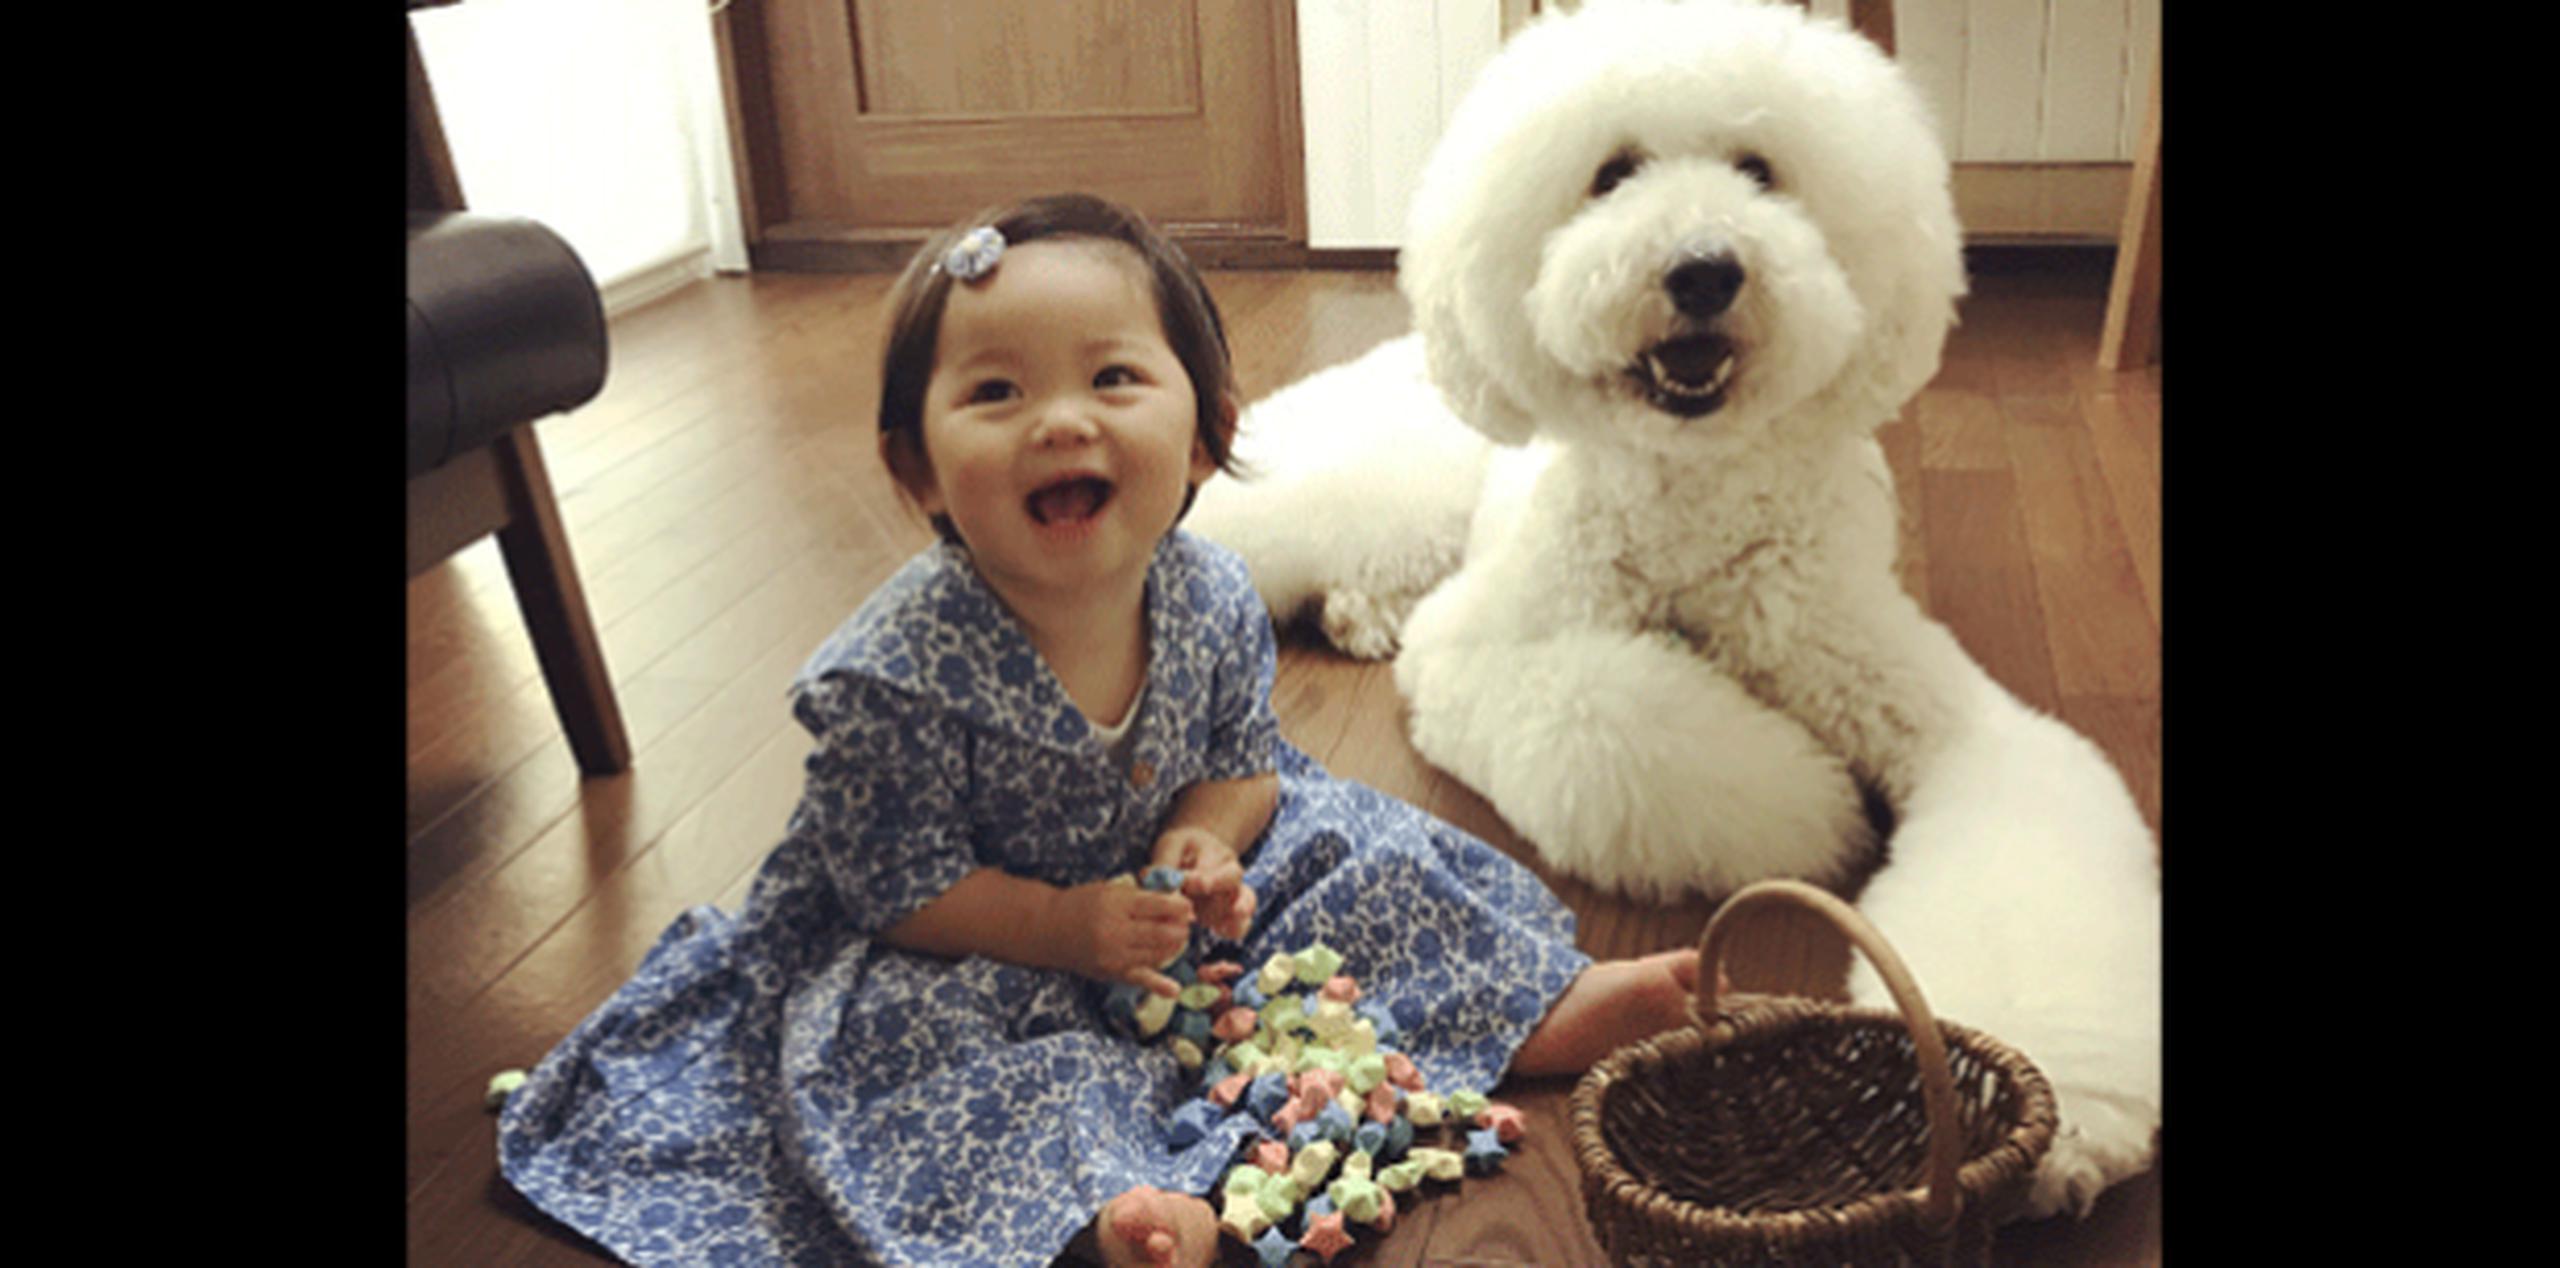 La niña y el perro comparten muchos momentos del día juntos. (Instagram)